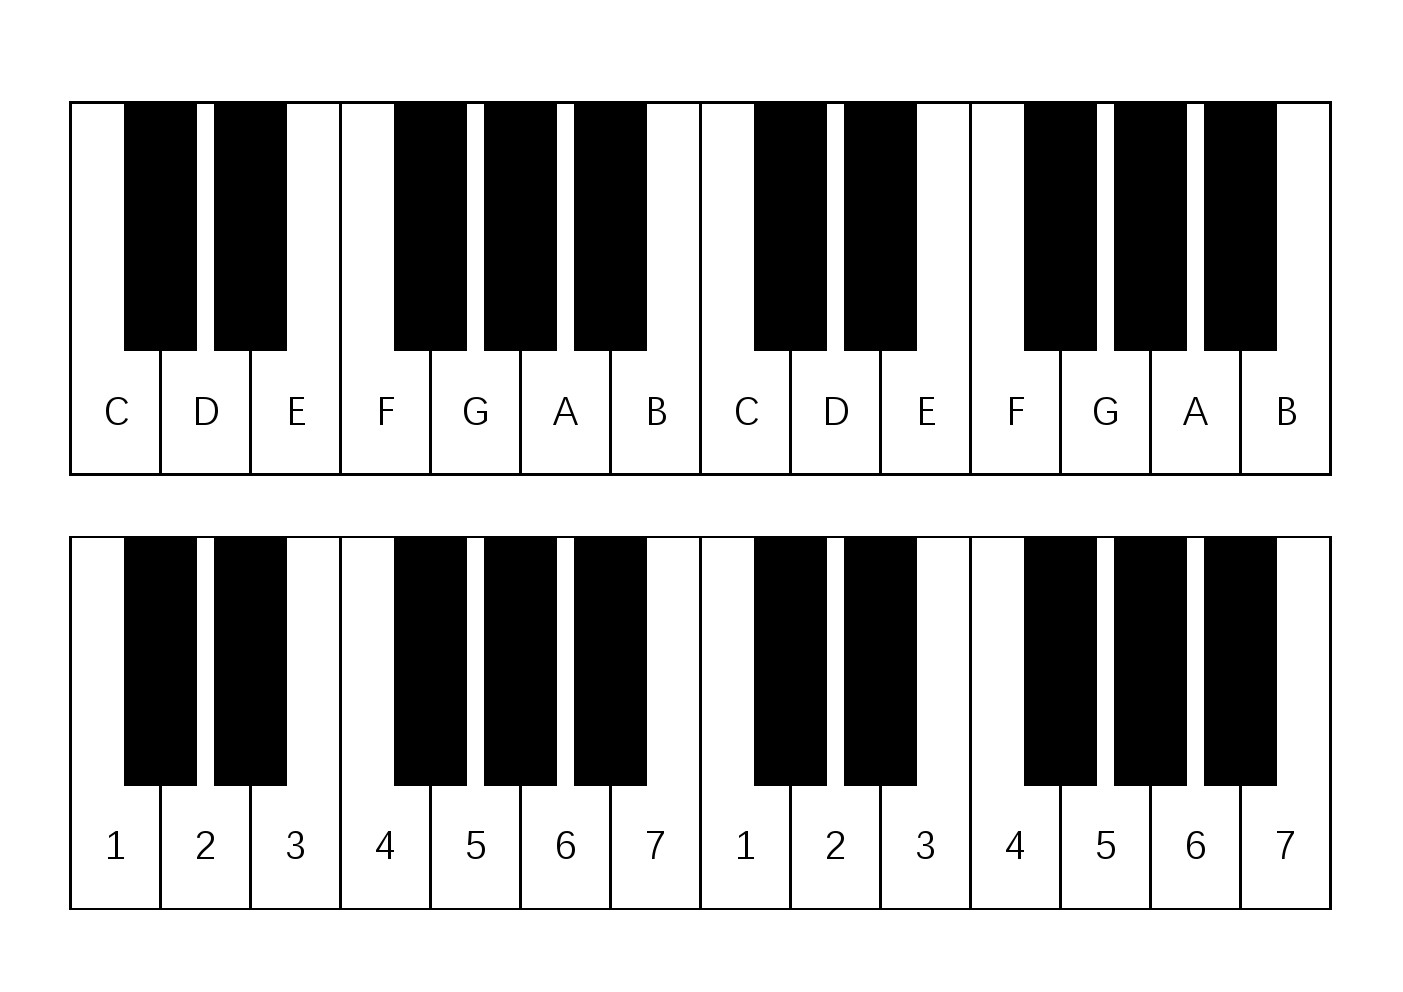 钢琴键盘音位图图片